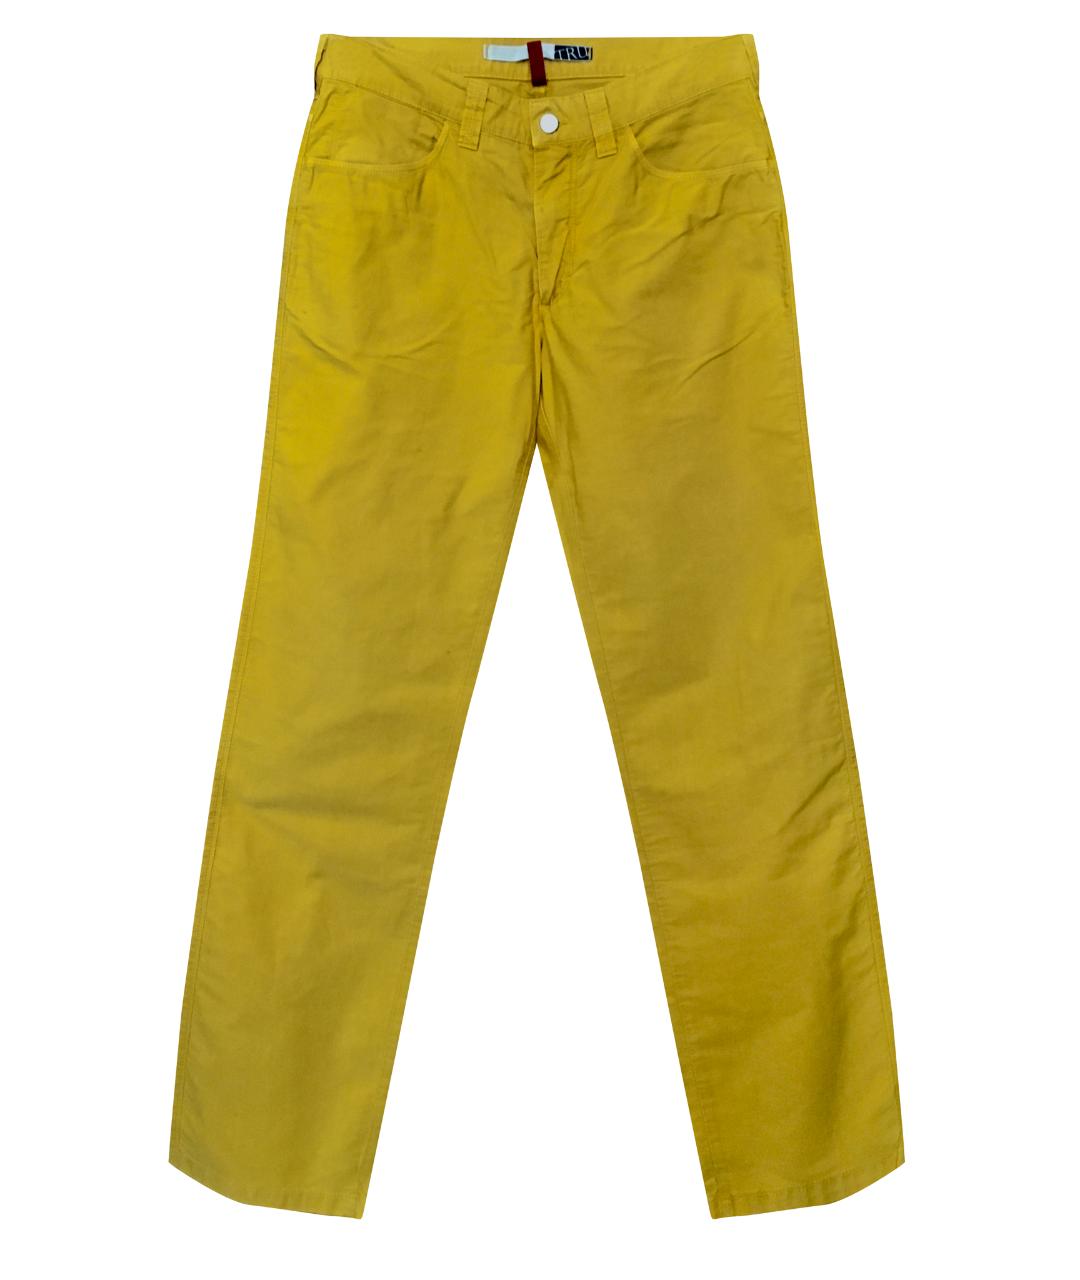 TRUSSARDI JEANS Желтые хлопковые прямые джинсы, фото 1